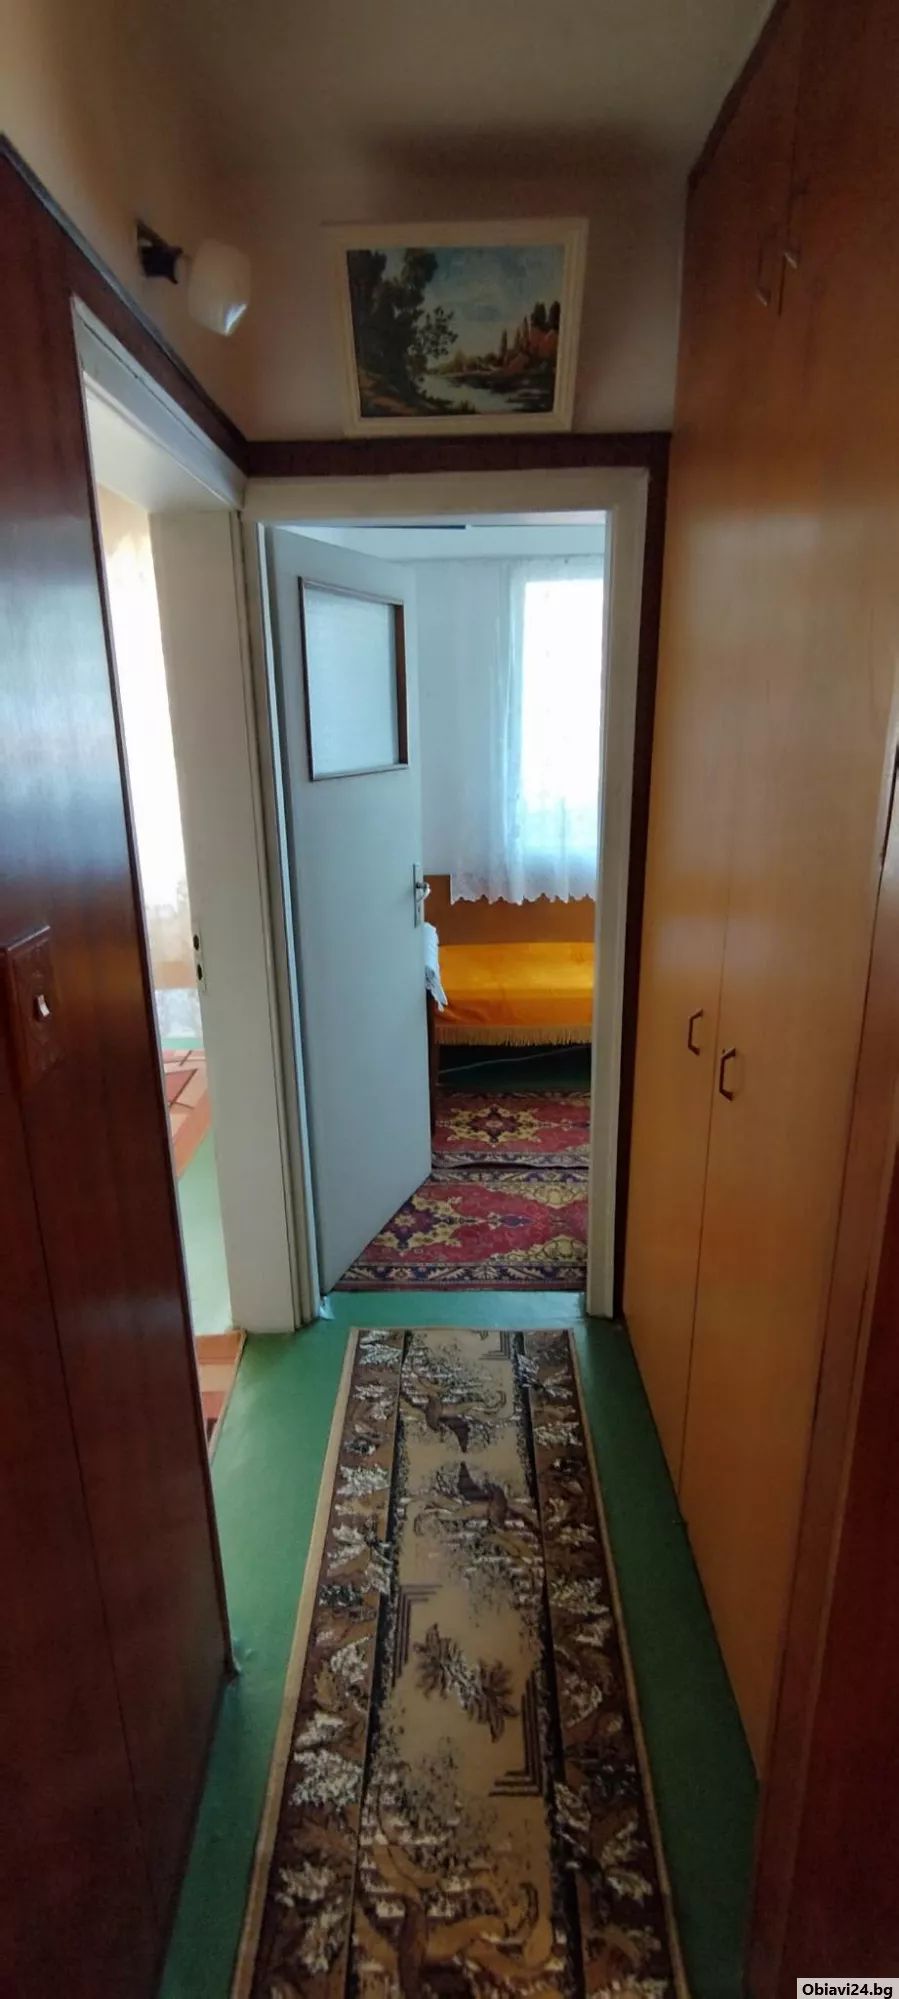 Продава се апартамент в град Карнобат от собственик - obiavi24.bg